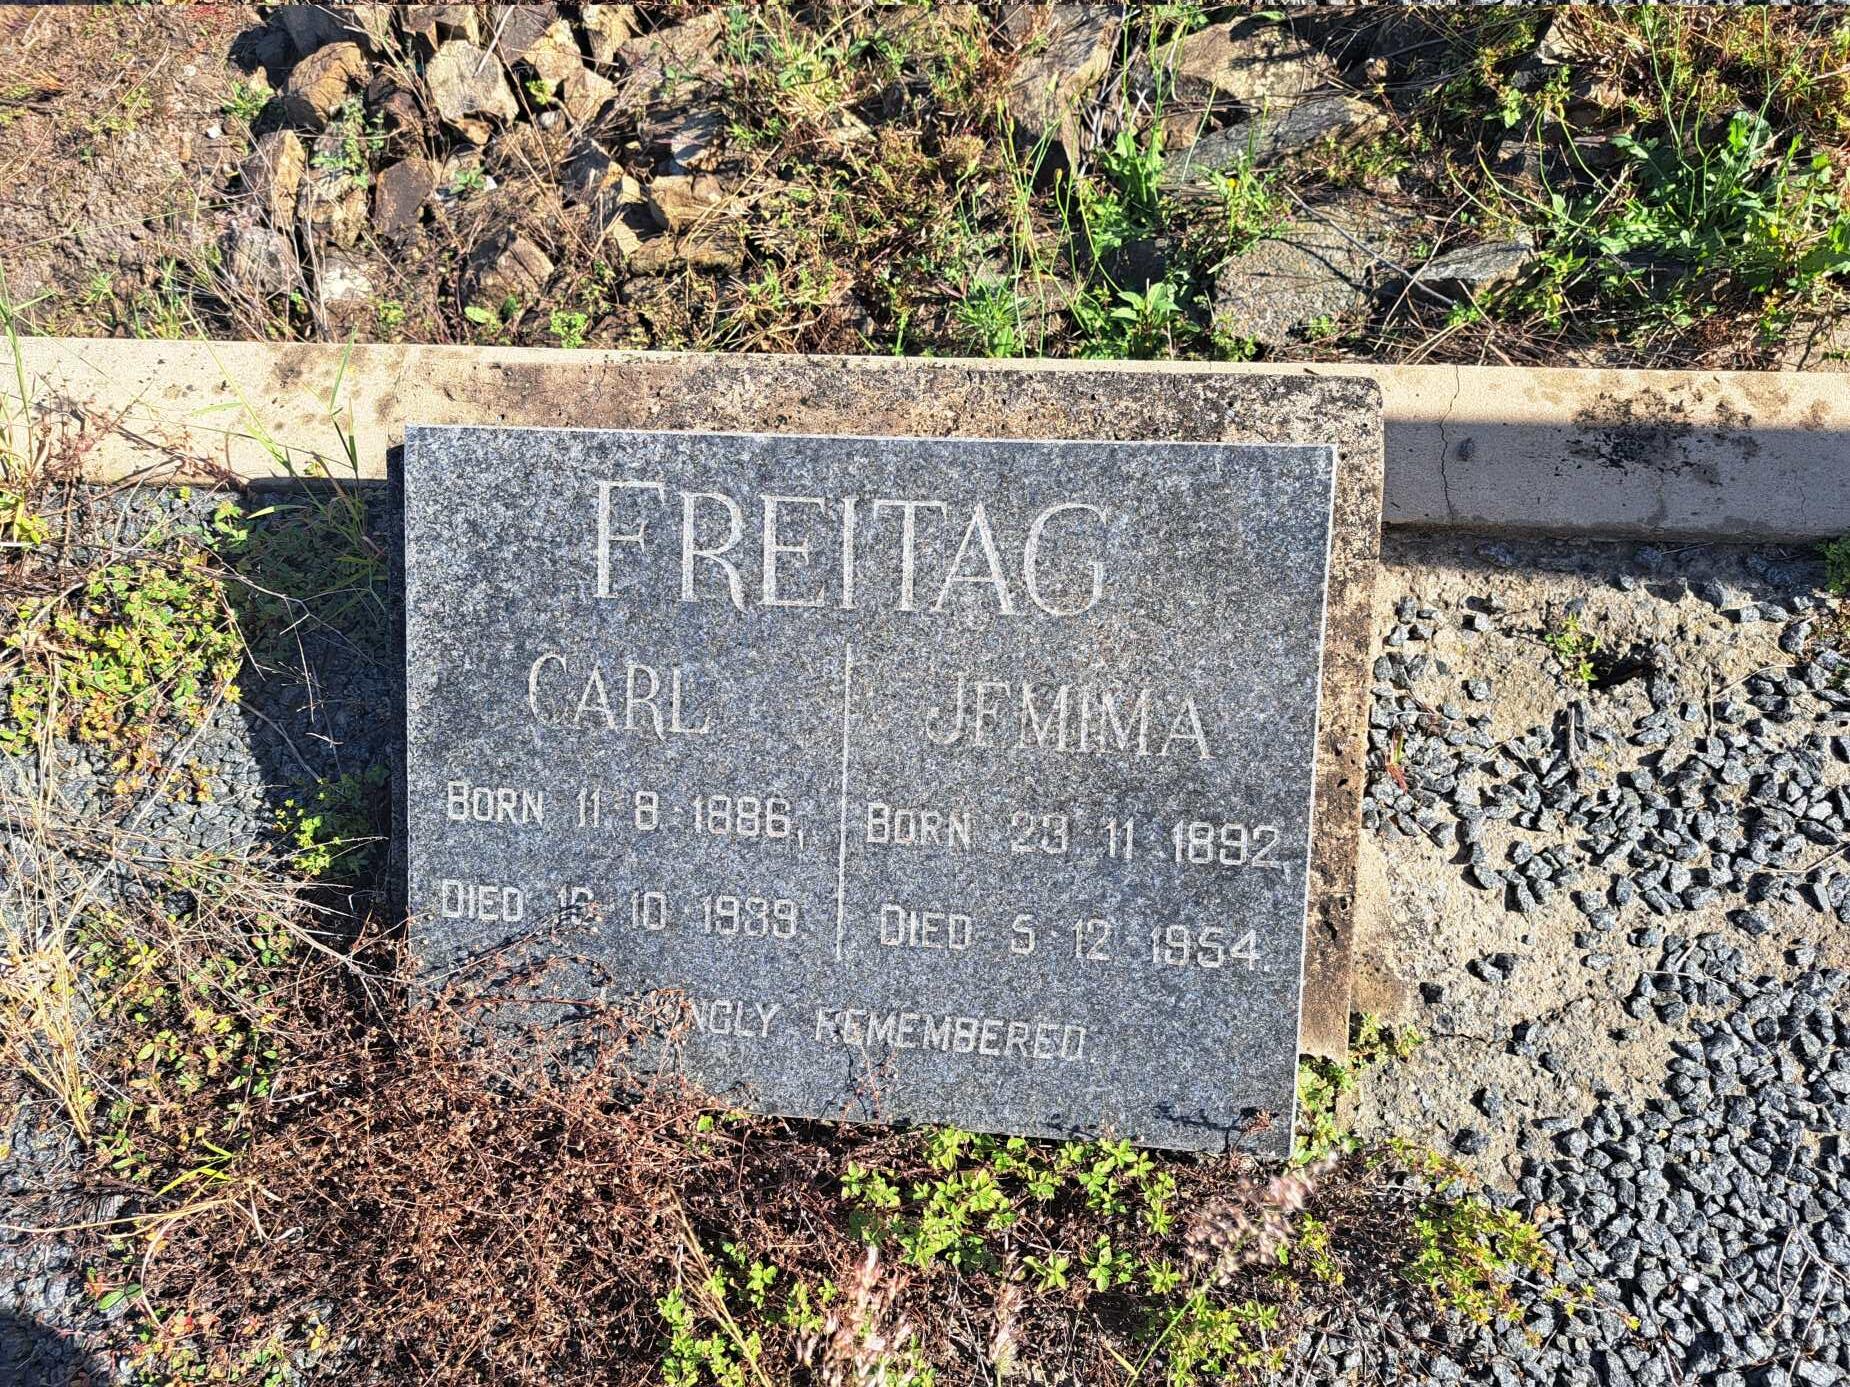 FREITAG Carl 1886-1939 & Jemima 1892-1954